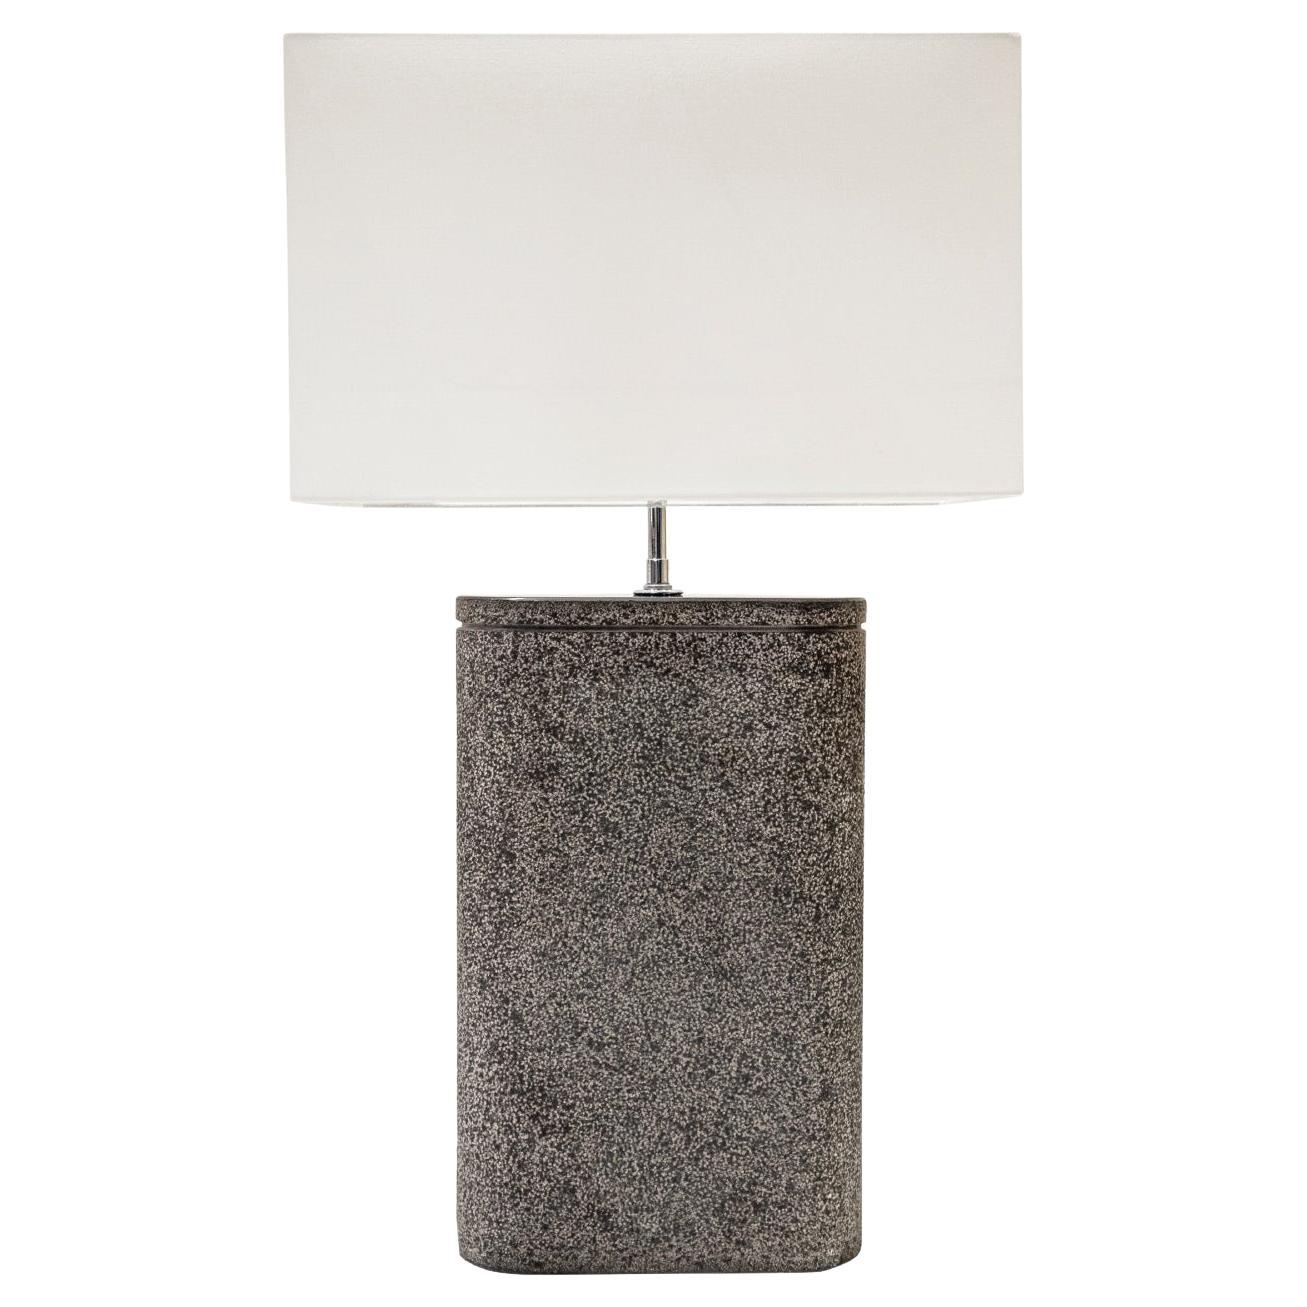 Karl Springer "Oval Table Lamp" In Black Granite with Lavastone Finish 1980s For Sale